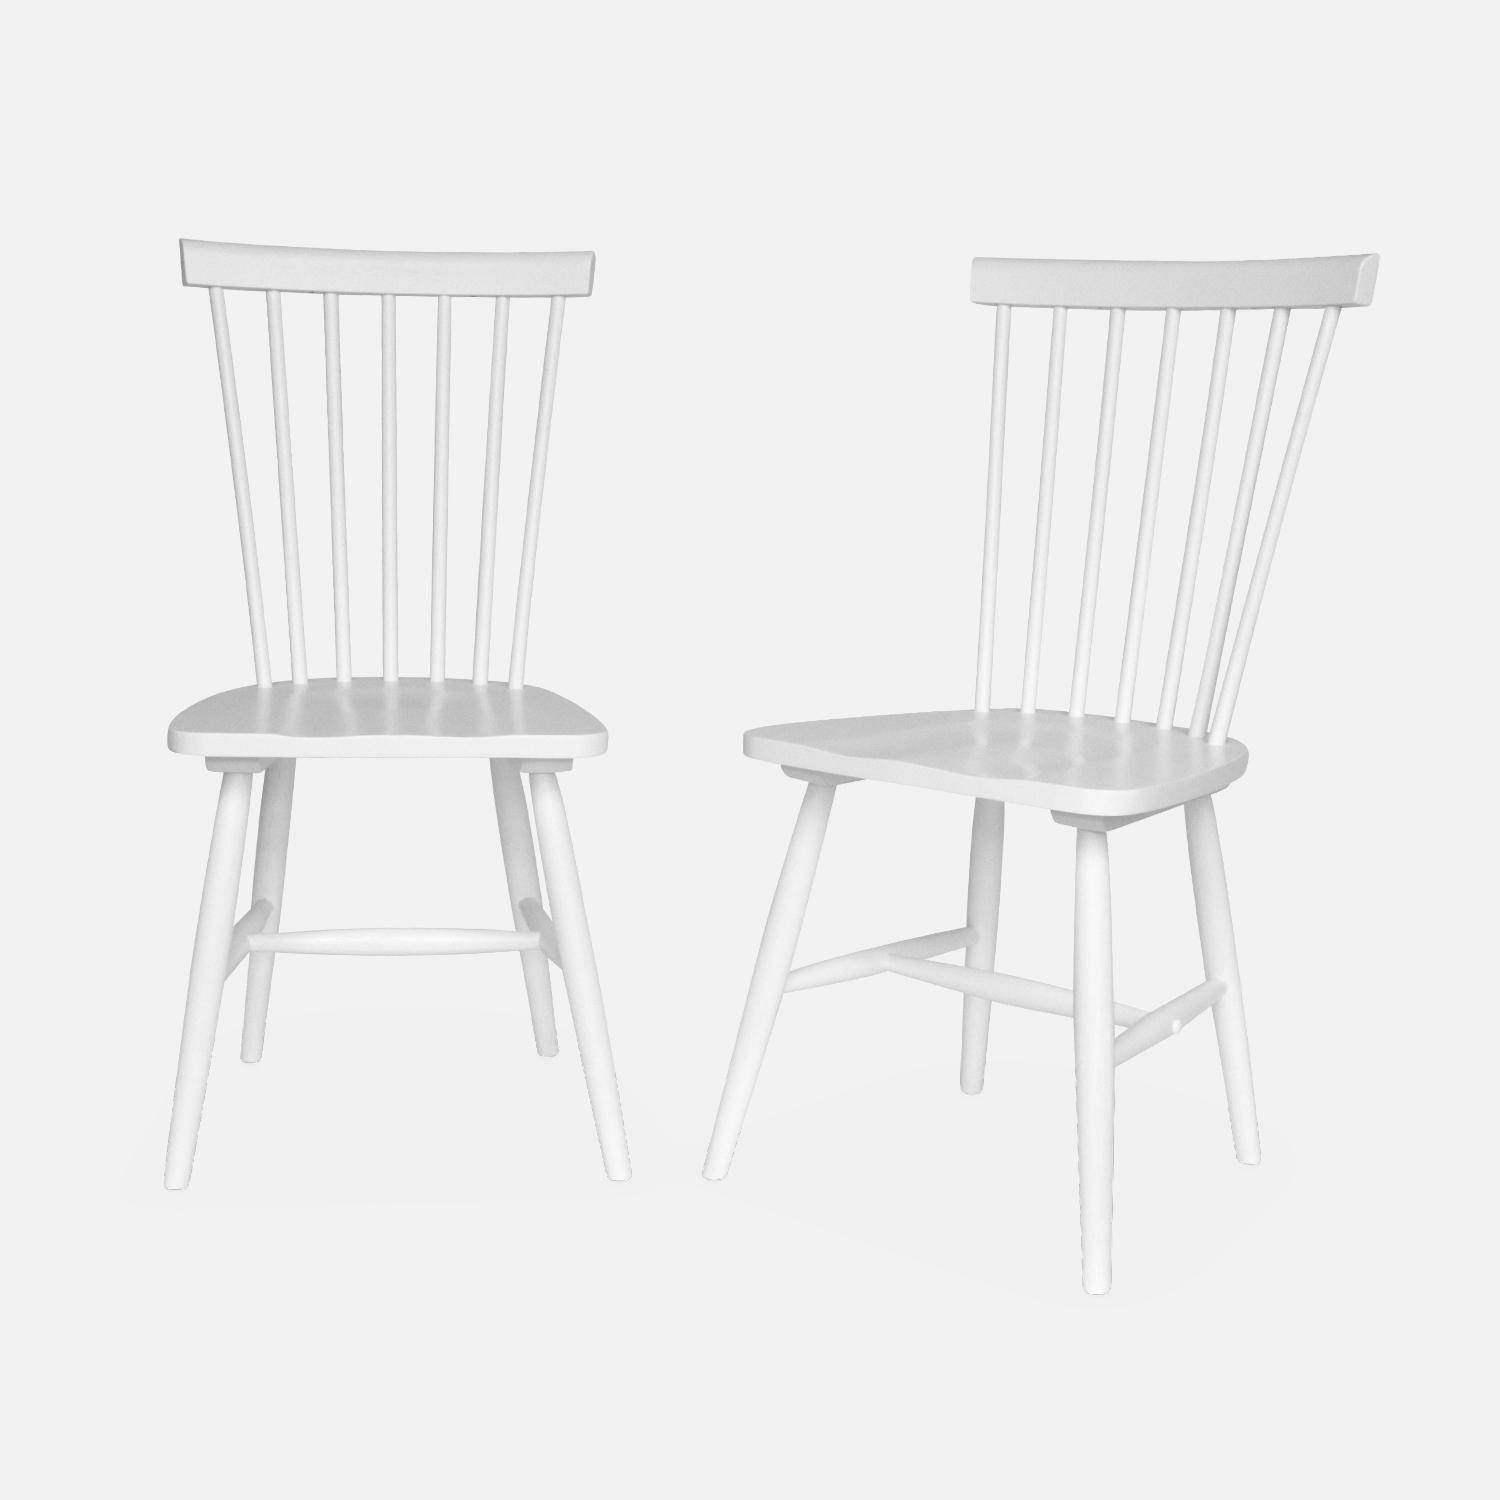 Lot de 2 chaises blanches à barreaux en bois d'hévéa, ROMIE, L 50,8 x P 44,2 x H 90cm. Livraison offerte, garantie 2 ans, meilleur prix garanti ! ,sweeek,Photo3